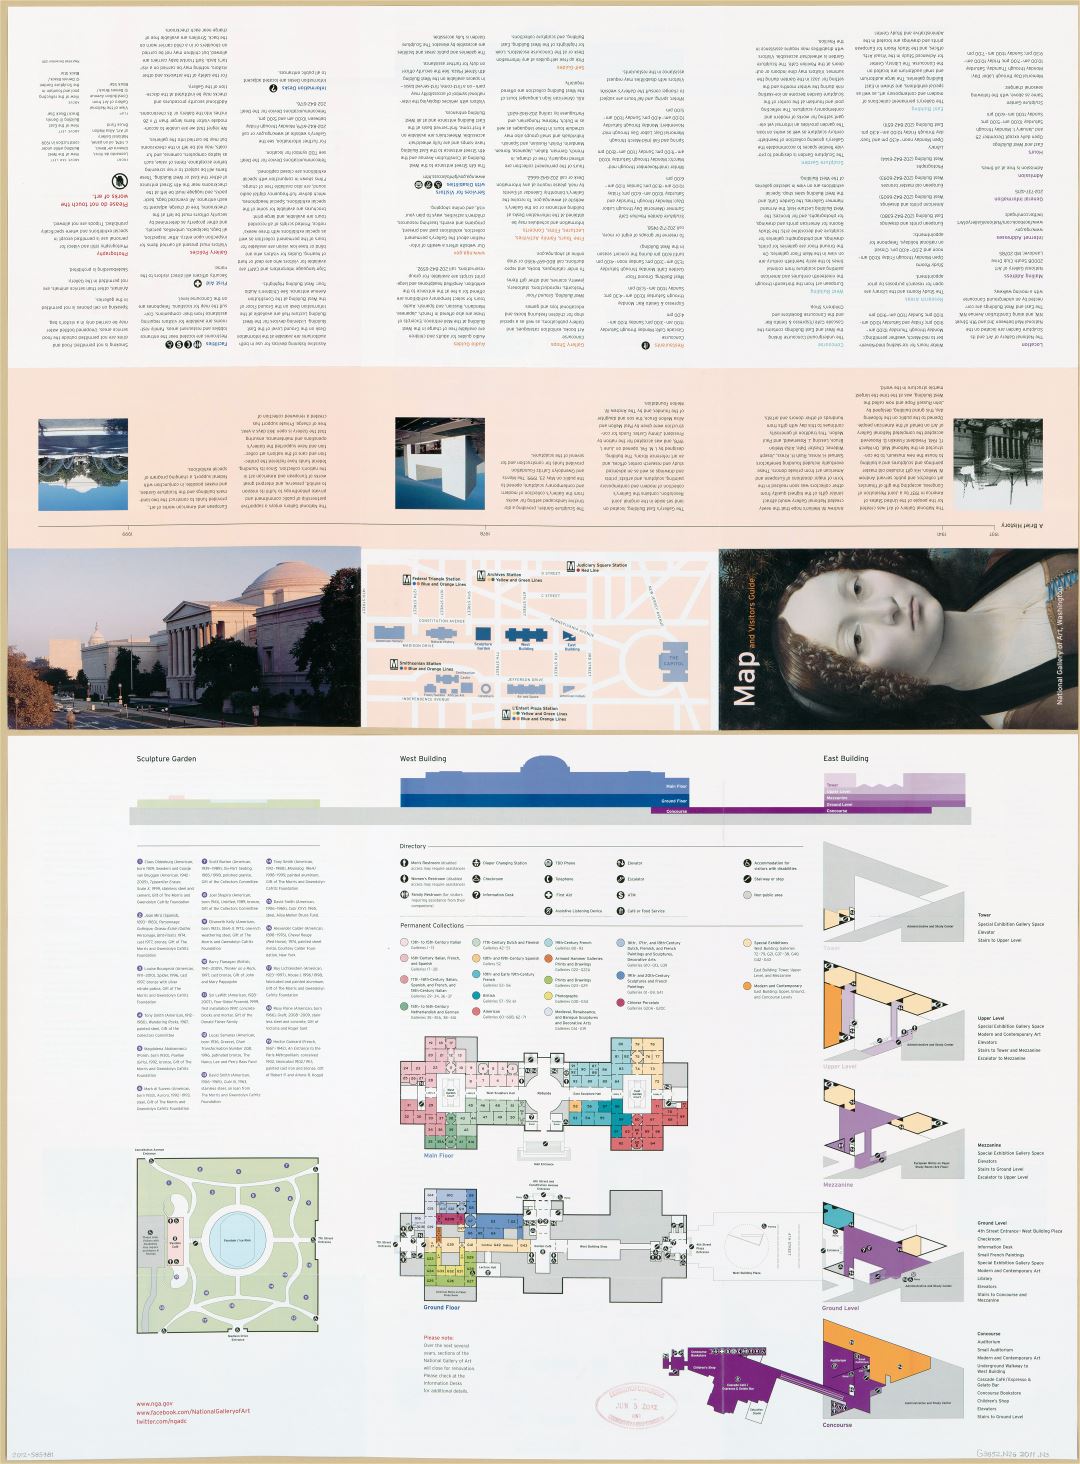 Крупномасштабная подробная карта и руководство для посетителей Национальной галереи искусств, Вашингтон, округ Колумбия - 2011